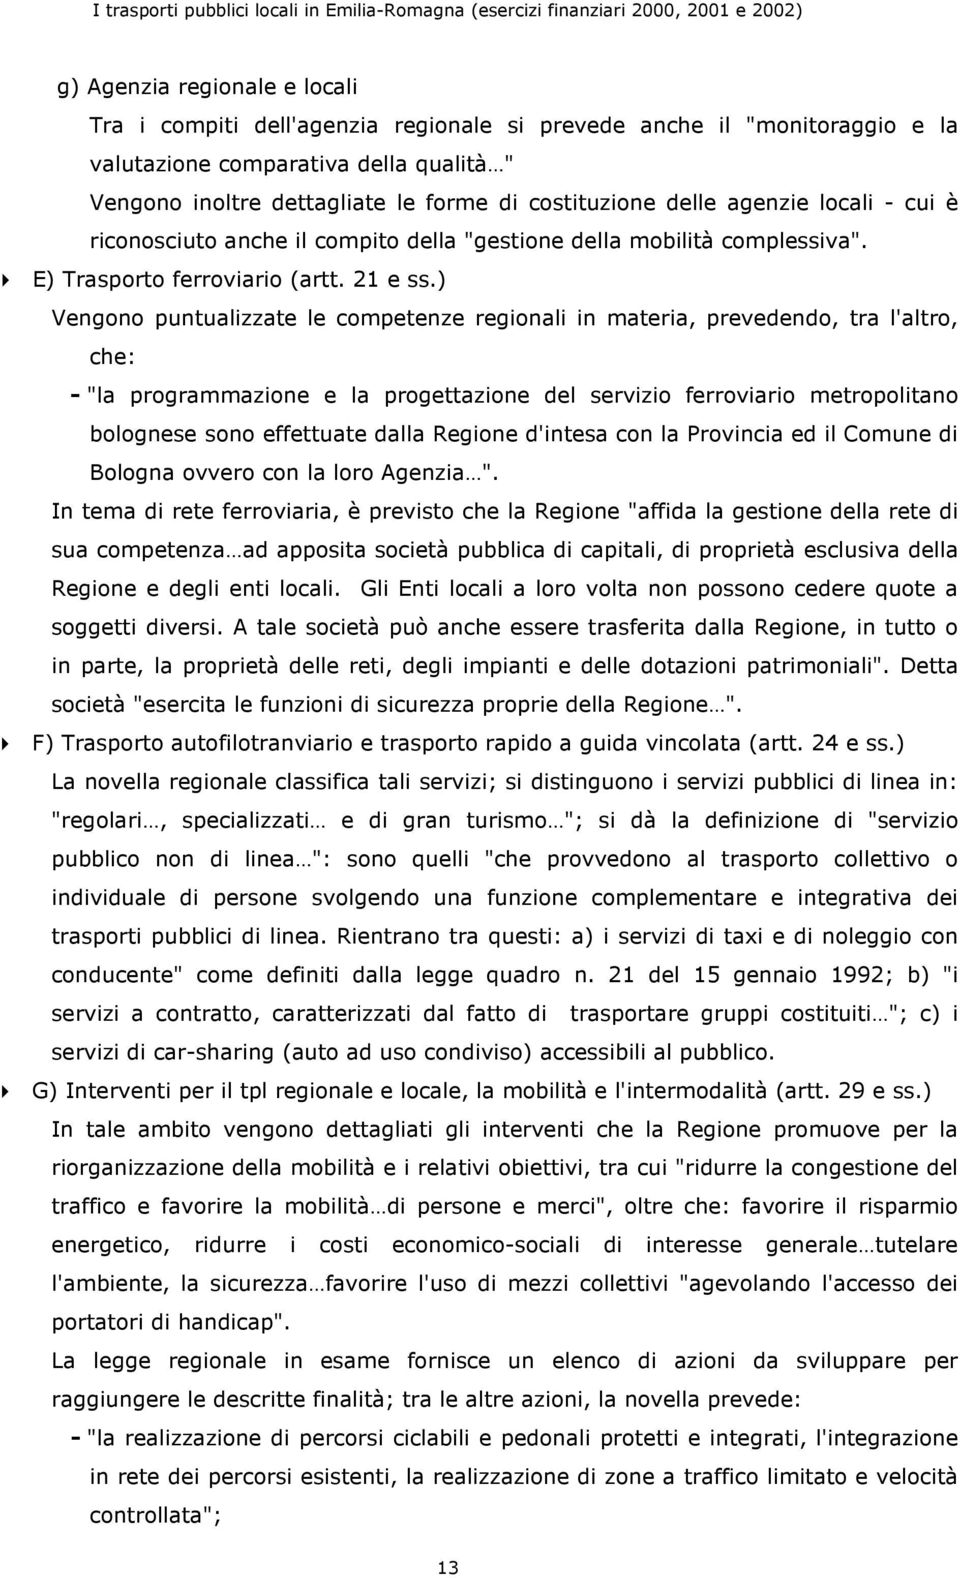 ) Vengono puntualizzate le competenze regionali in materia, prevedendo, tra l'altro, che: - "la programmazione e la progettazione del servizio ferroviario metropolitano bolognese sono effettuate